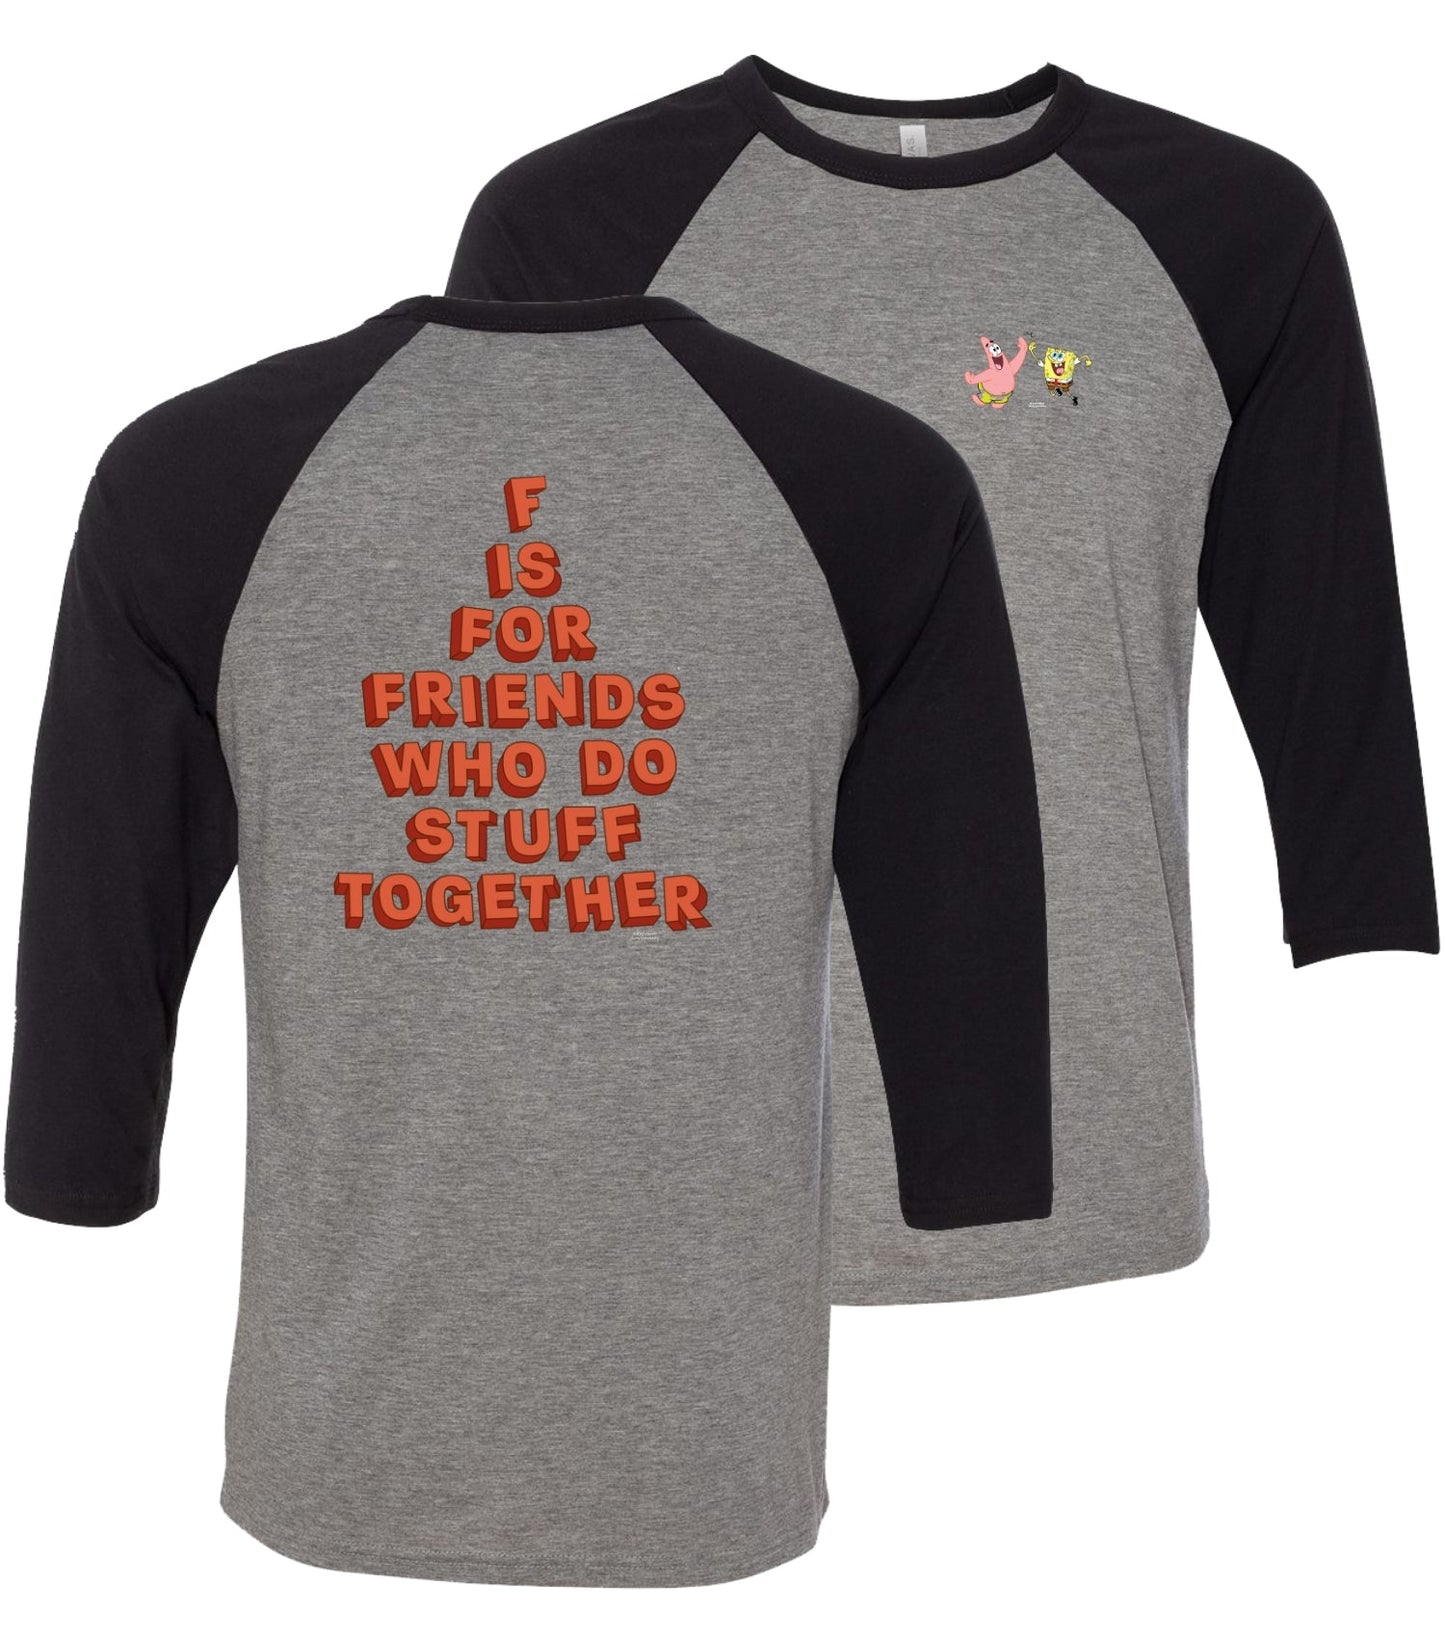 Spongebob Schwammkopf tun Sachen zusammen Raglan-Ärmel Baseball T-Shirt